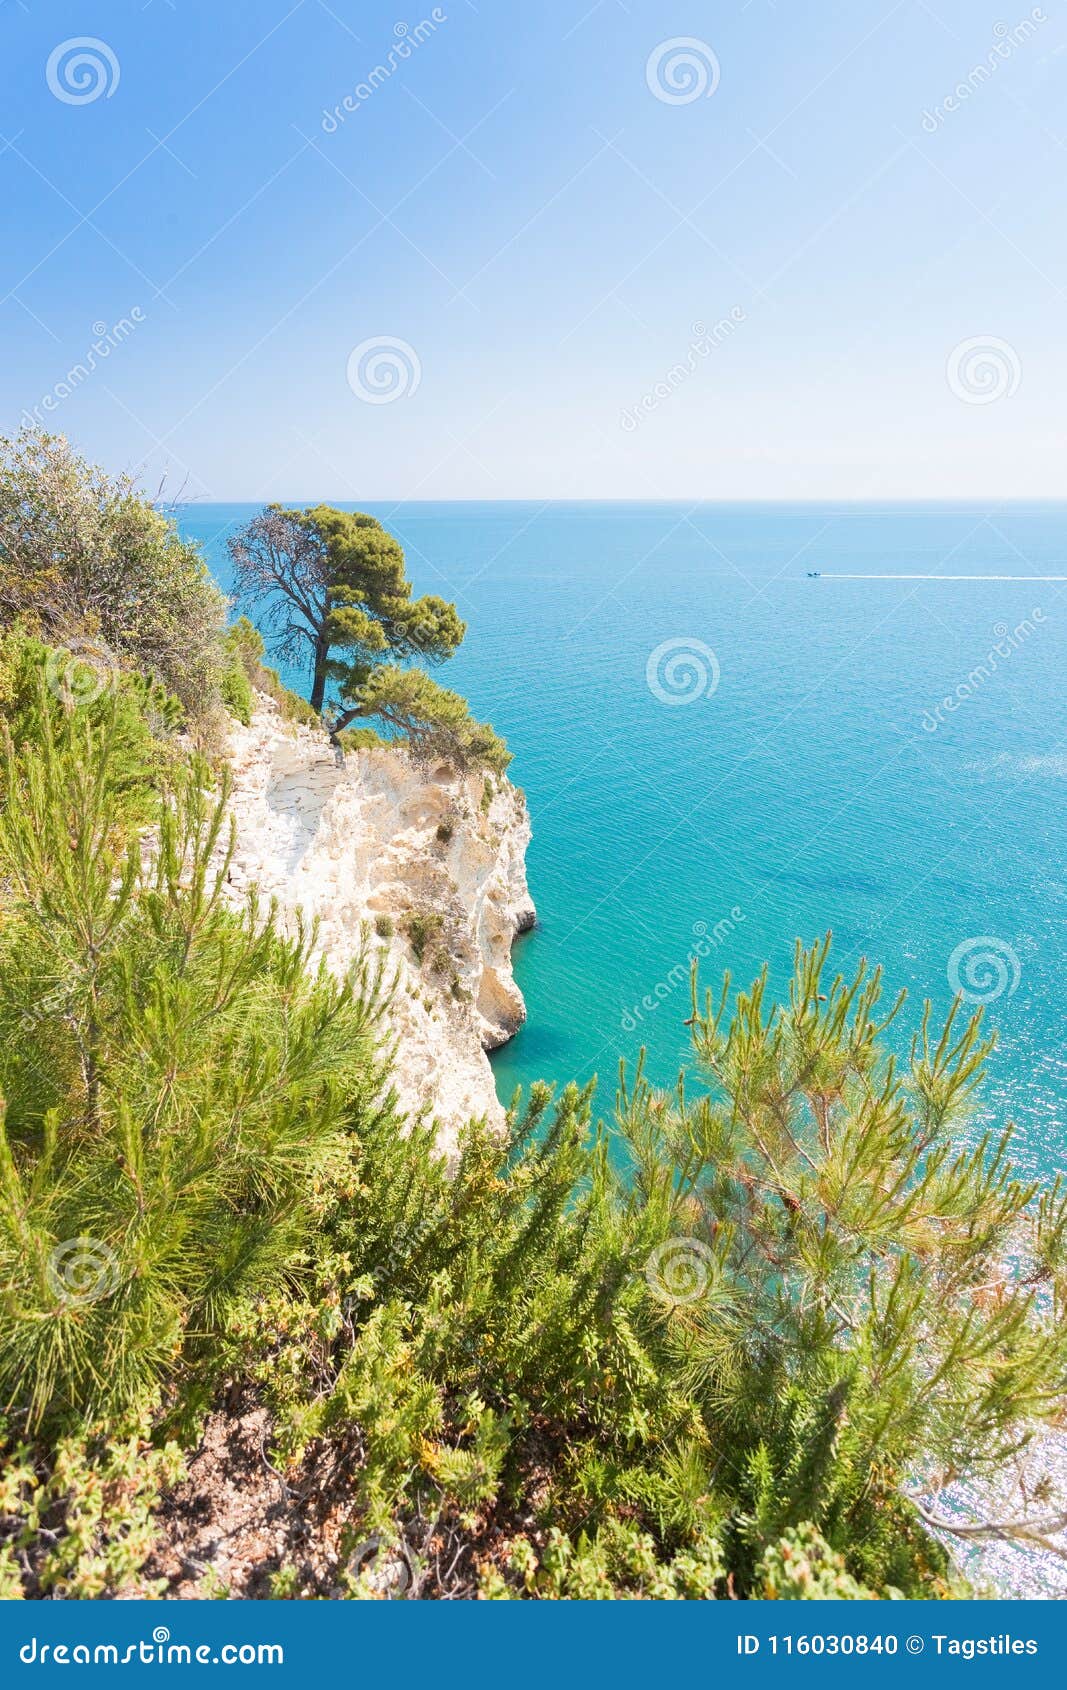 grotta della campana piccola, apulia - mediterranean coastline a